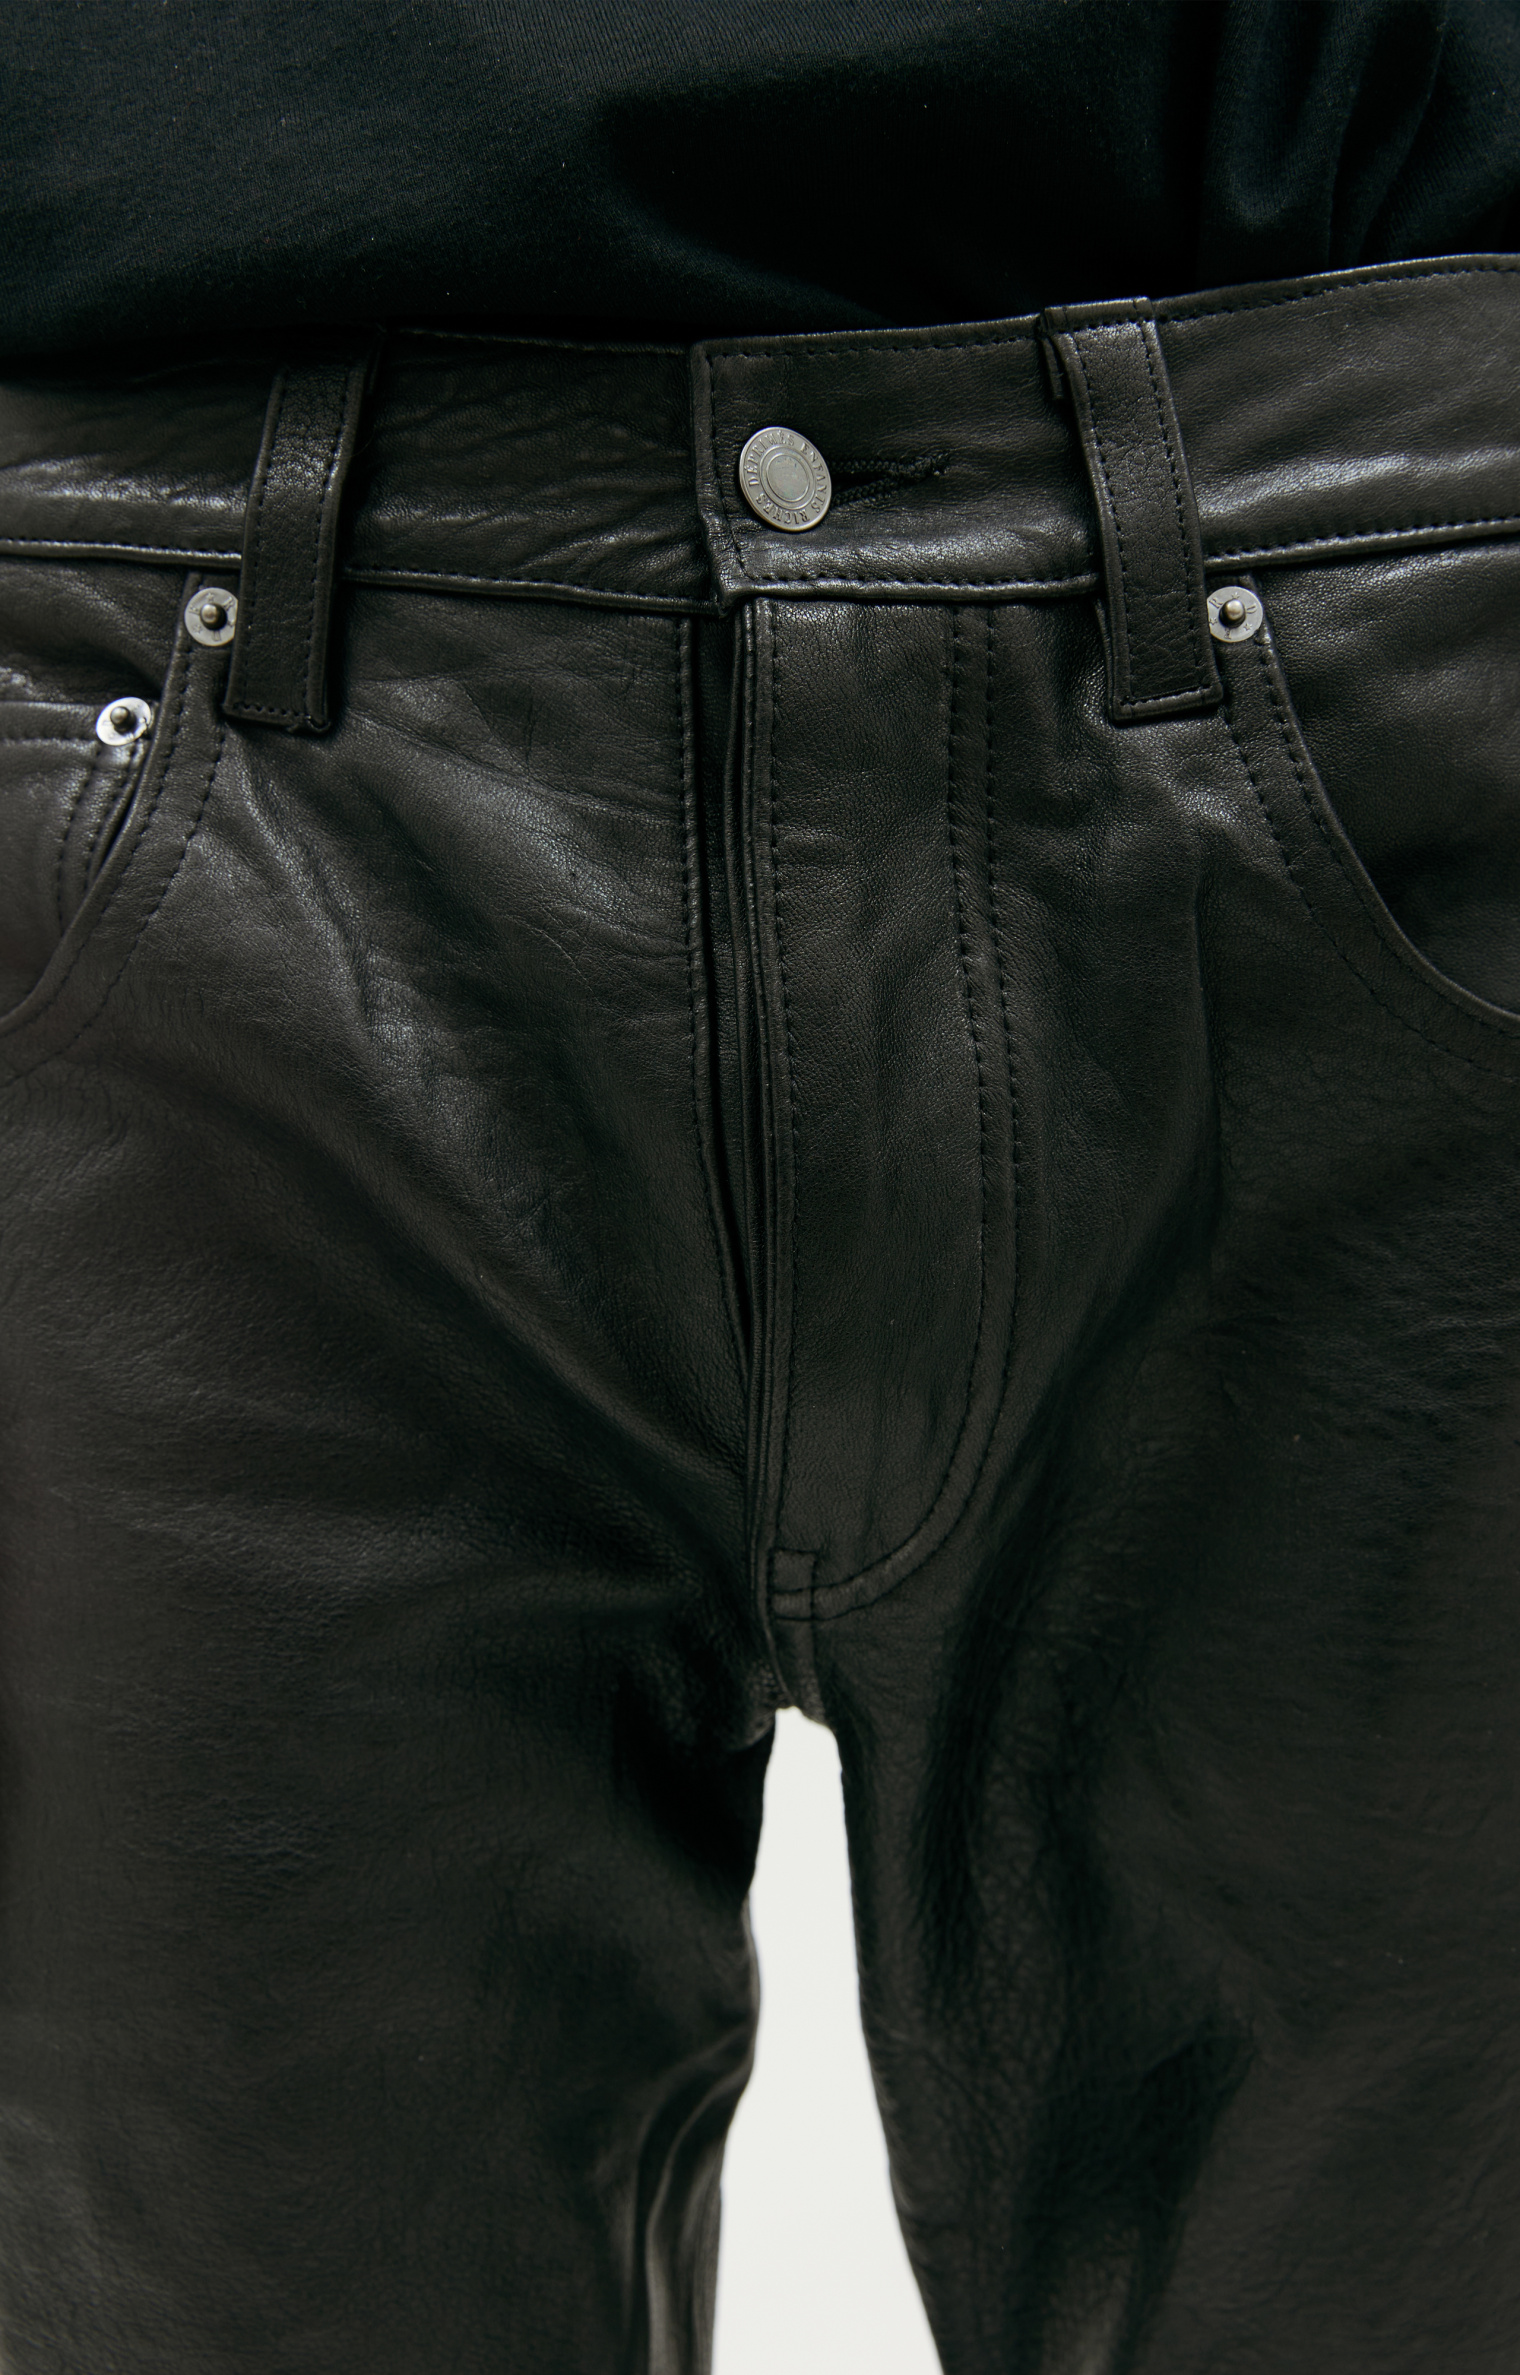 Enfants Riches Deprimes Black leather trousers